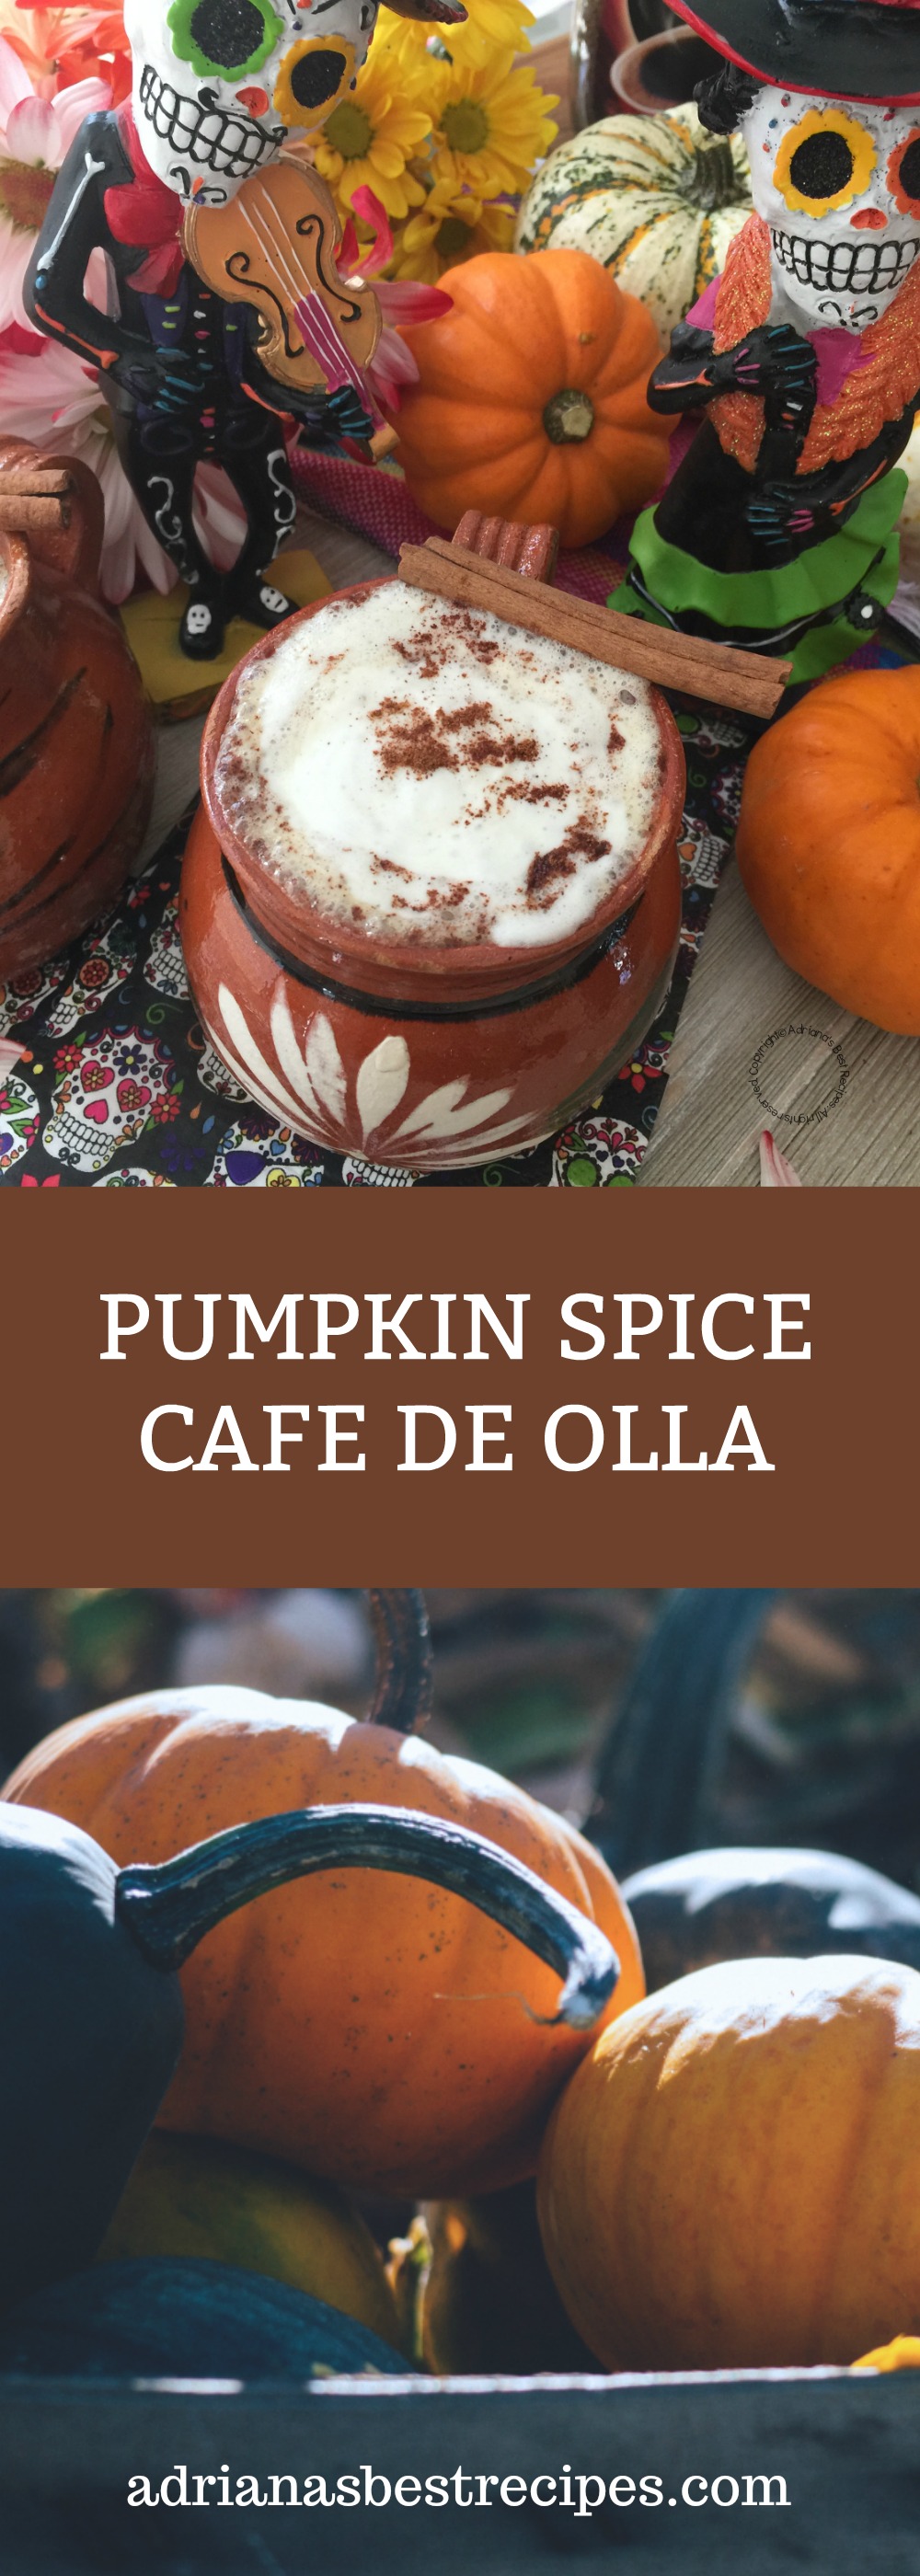 El cafe de olla con especia de calabaza está inspirado en el Pumpkin Spice Cafe Latte